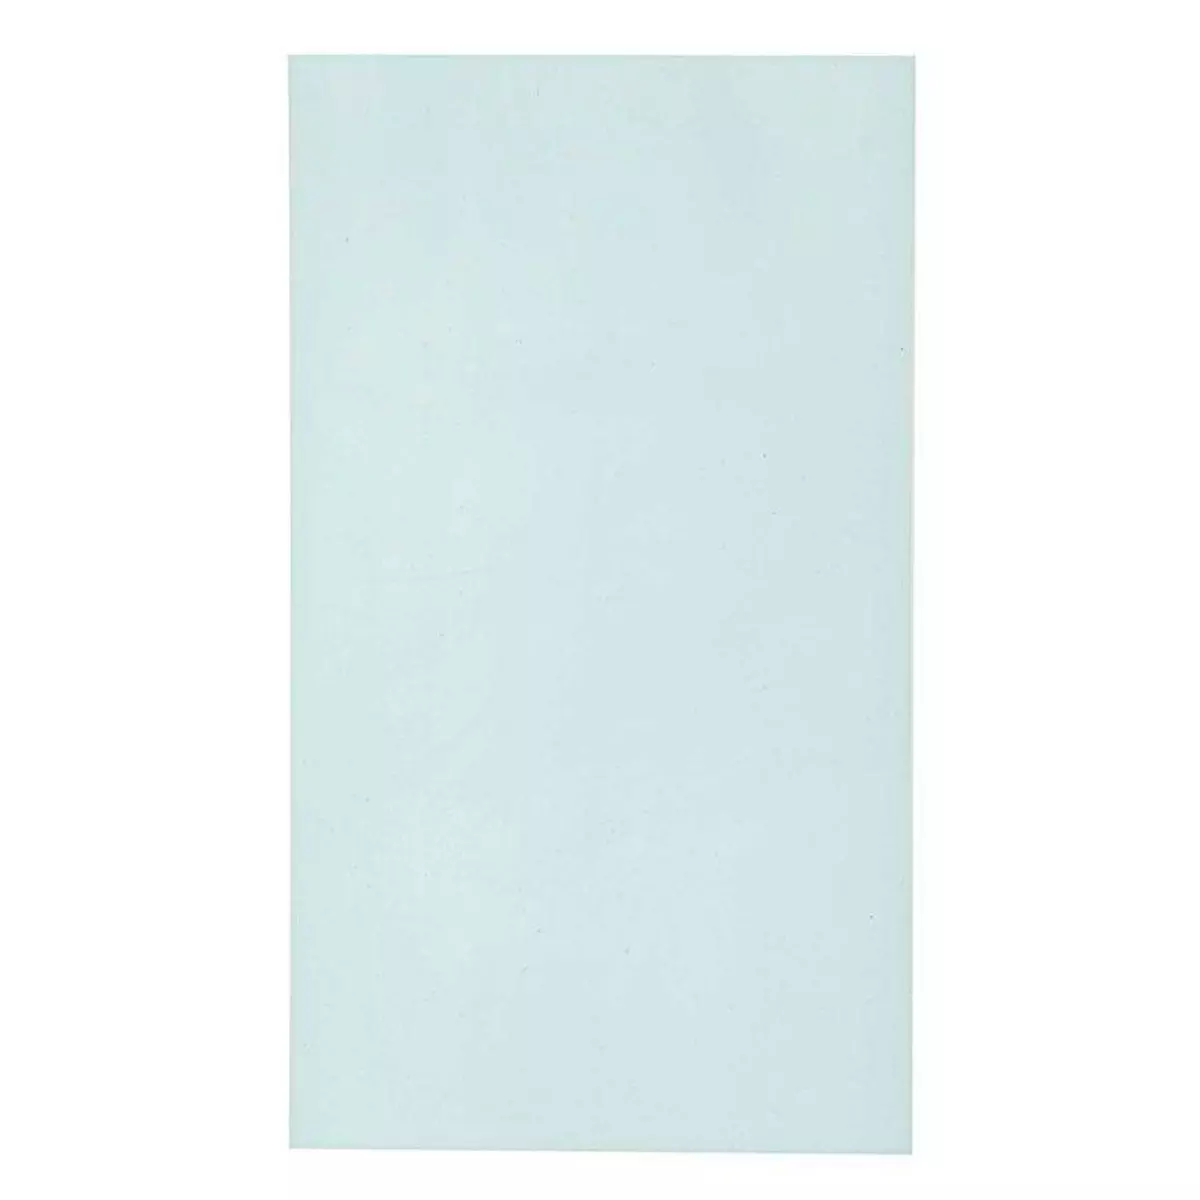 RICO DESIGN Plaque de caoutchouc pour réaliser ses tampons soi-même 15 x 26,5 cm